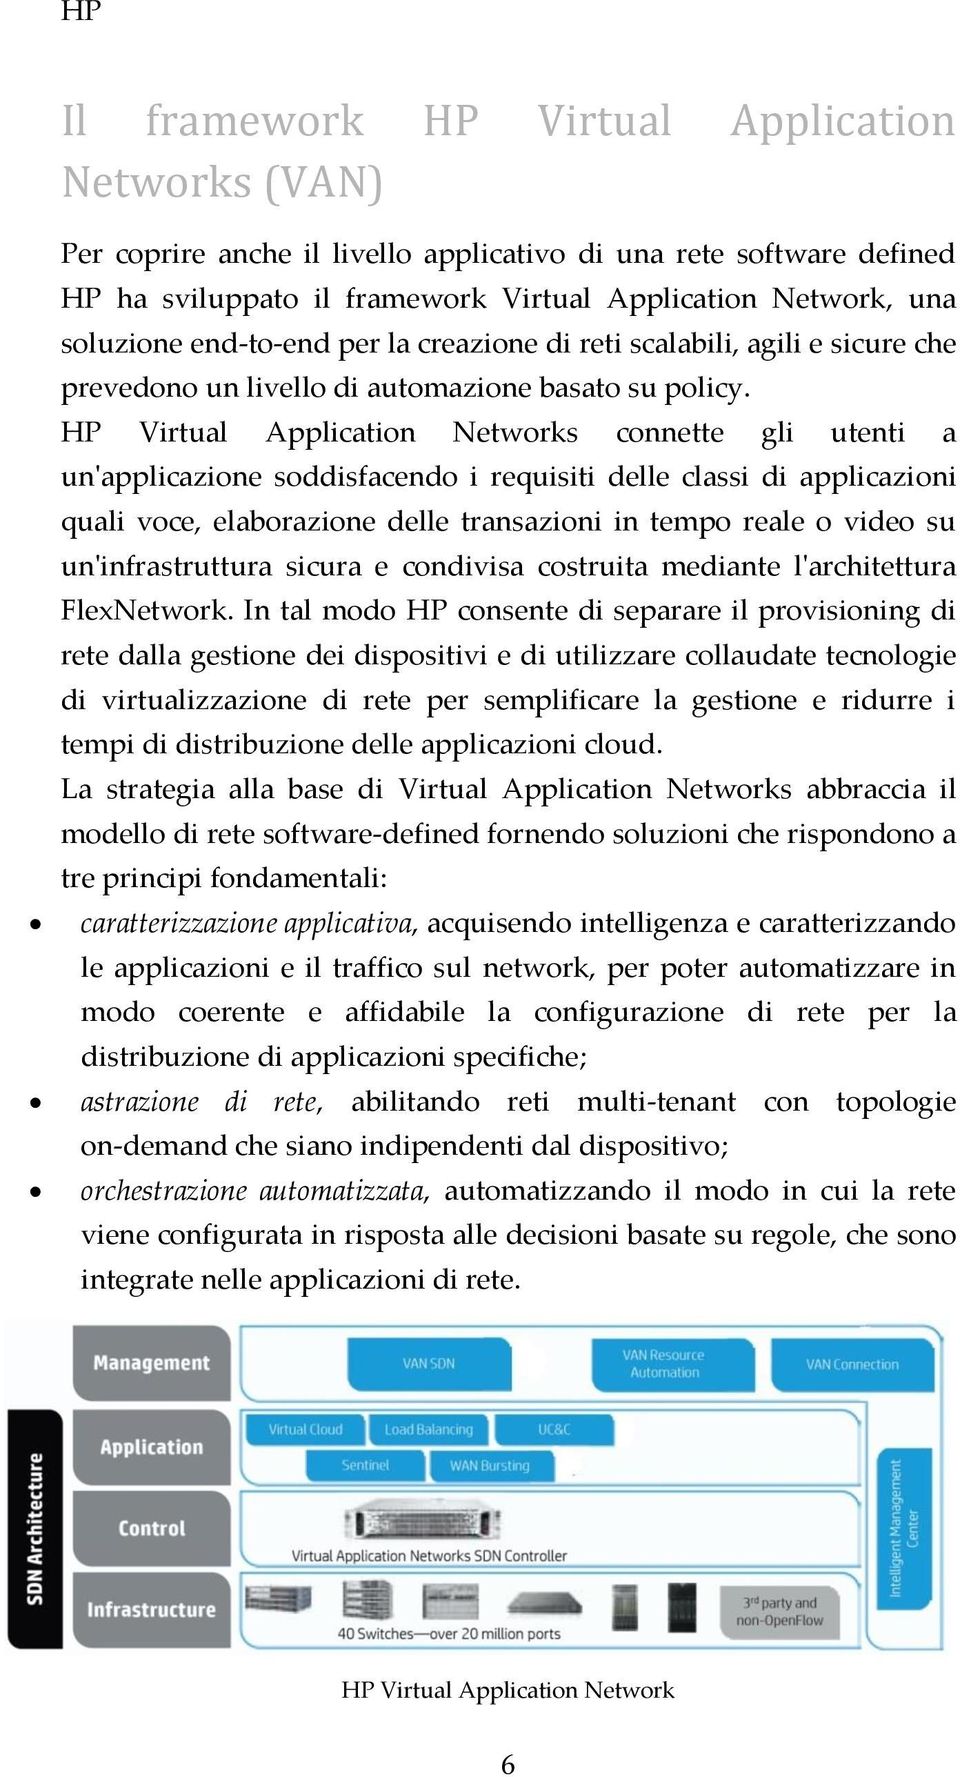 HP Virtual Application Networks connette gli utenti a un'applicazione soddisfacendo i requisiti delle classi di applicazioni quali voce, elaborazione delle transazioni in tempo reale o video su